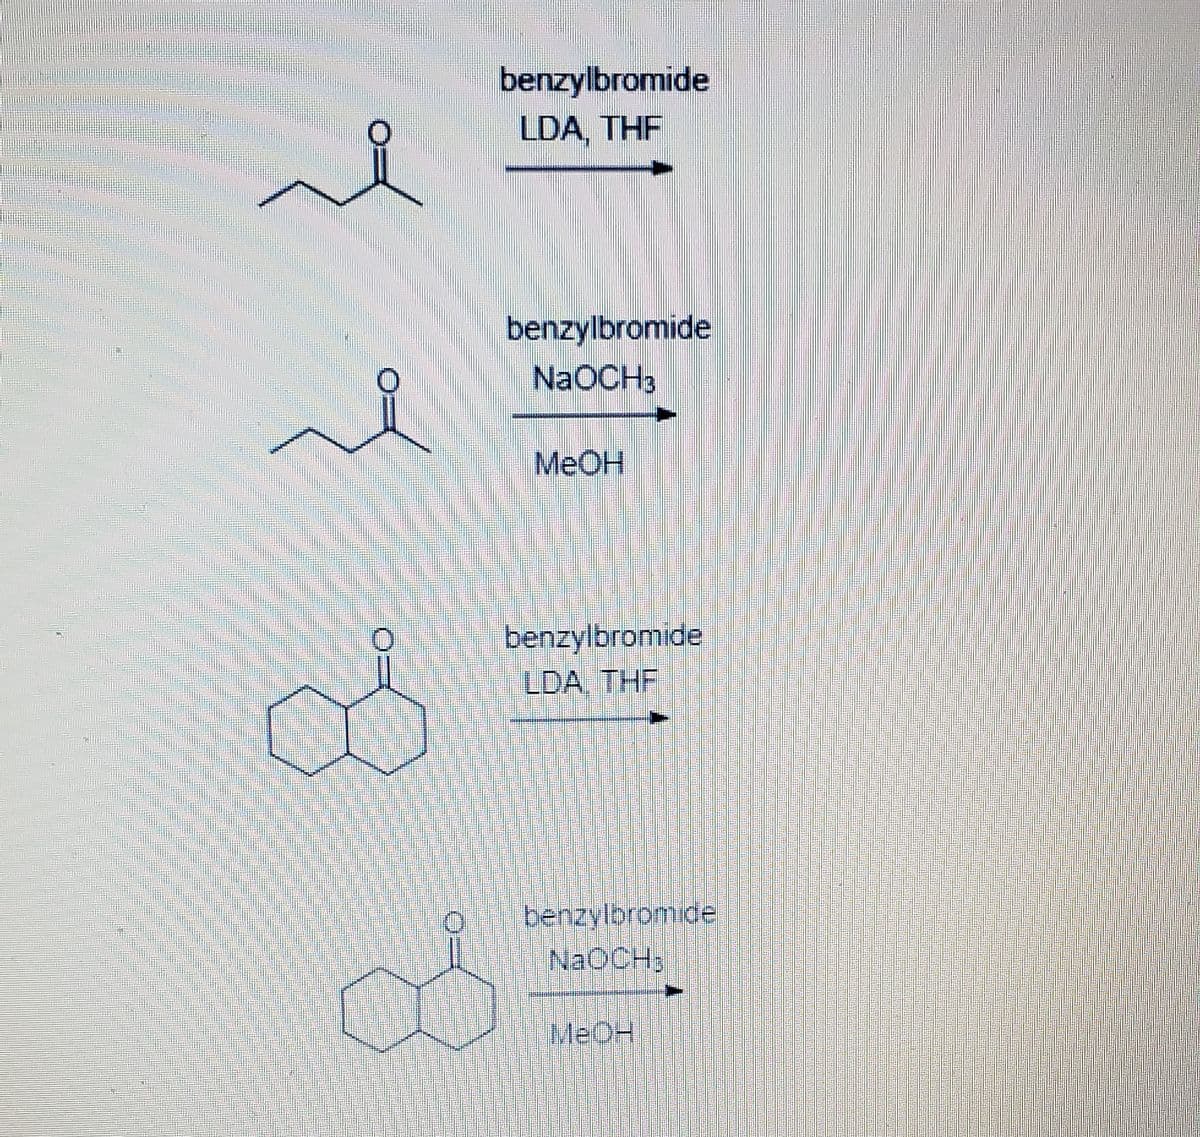 benzylbromide
LDA, THF
benzylbromide
NaOCH3
MeOH
benzylbromide
LDA, THF
benzylbromide
NAOCH;
MEOH
